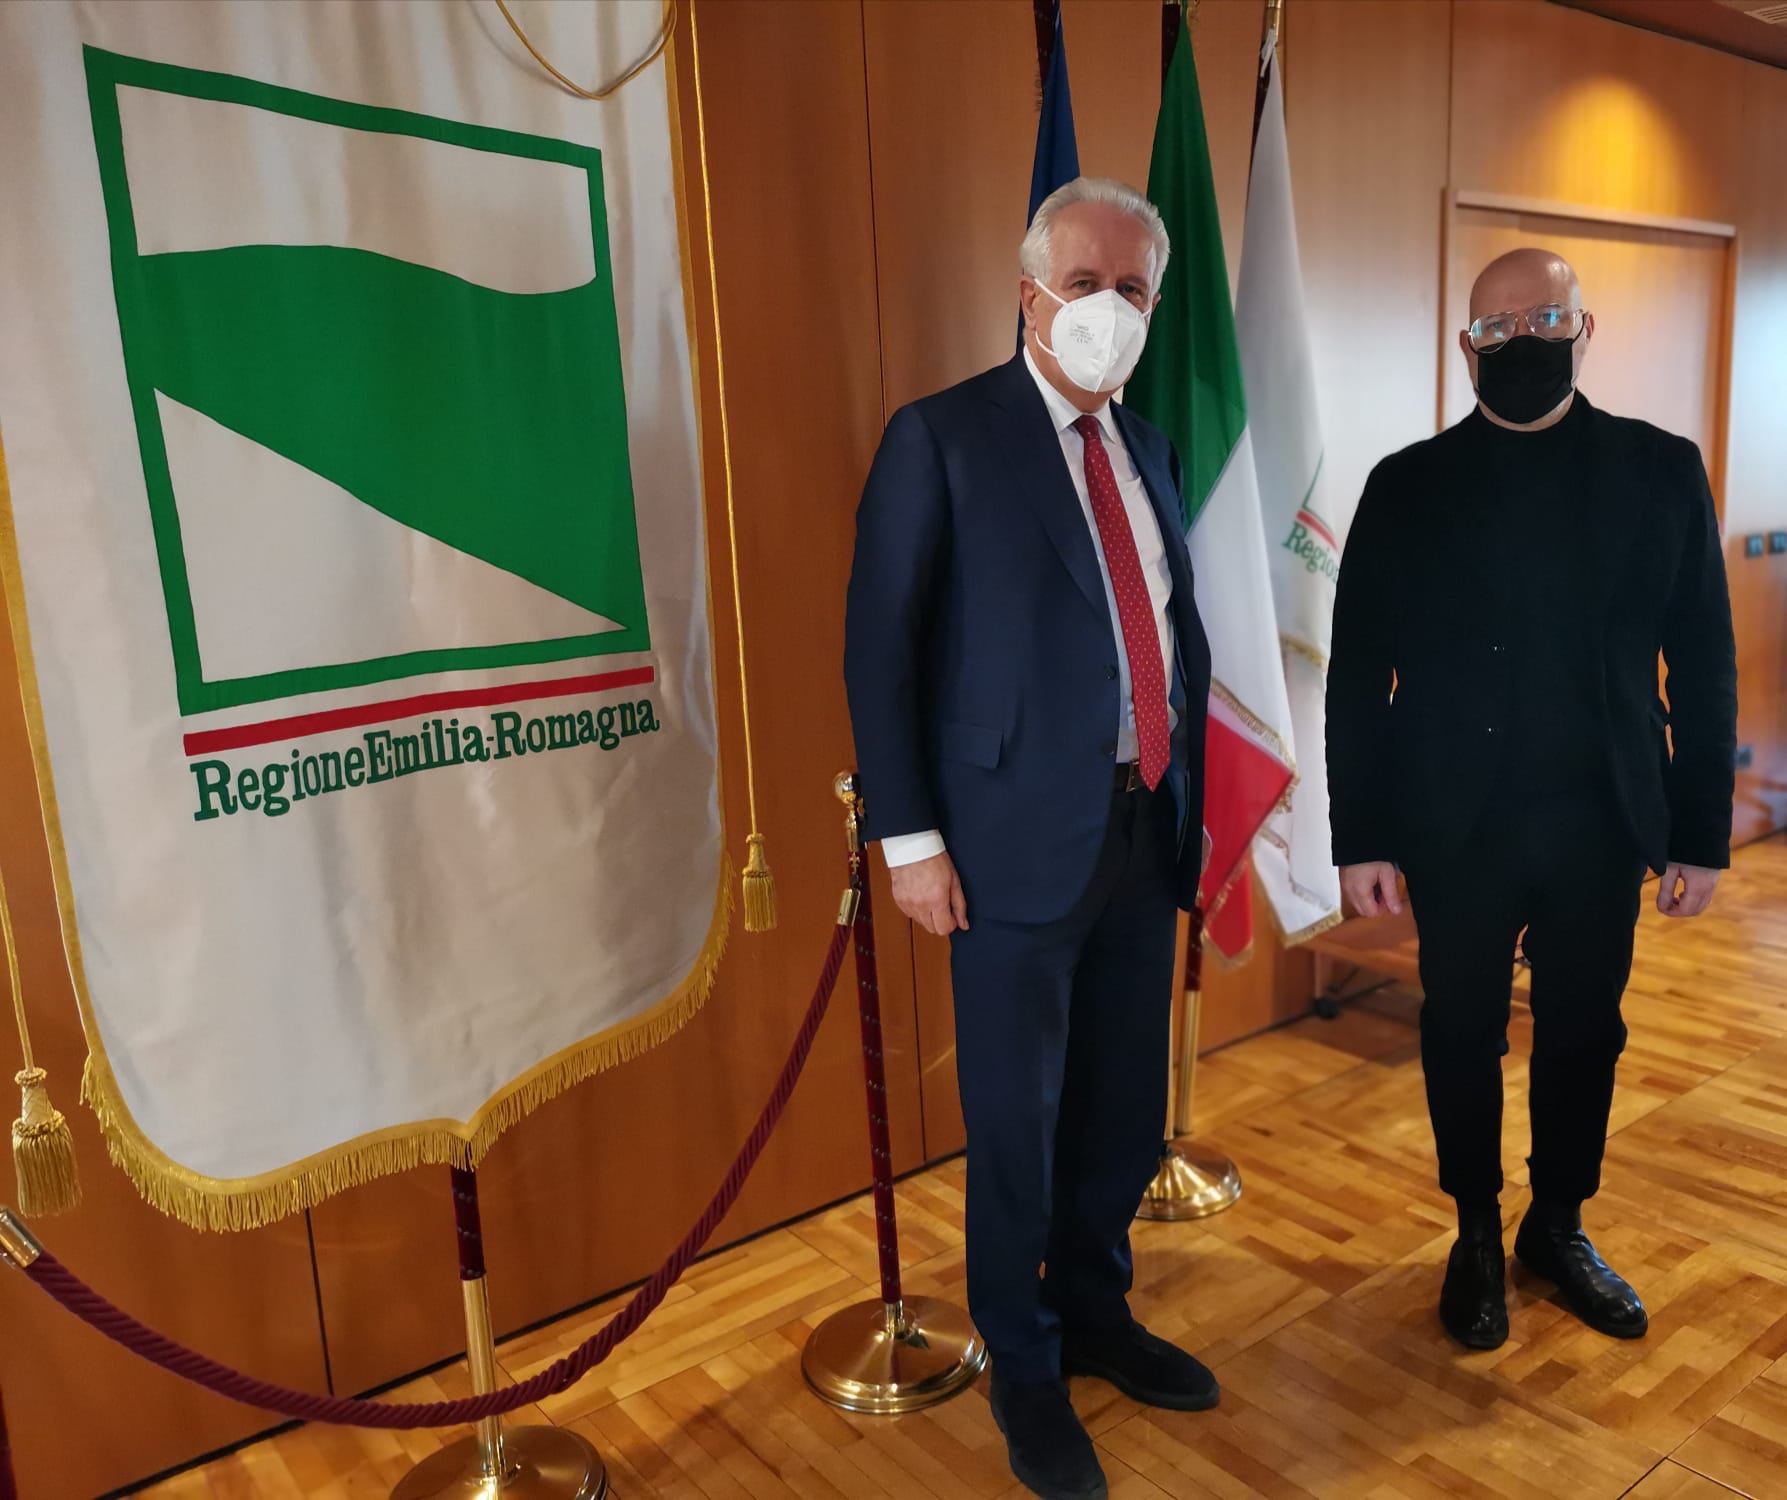 Toscana ed Emilia Romagna, alleanza strategica a tutto campo